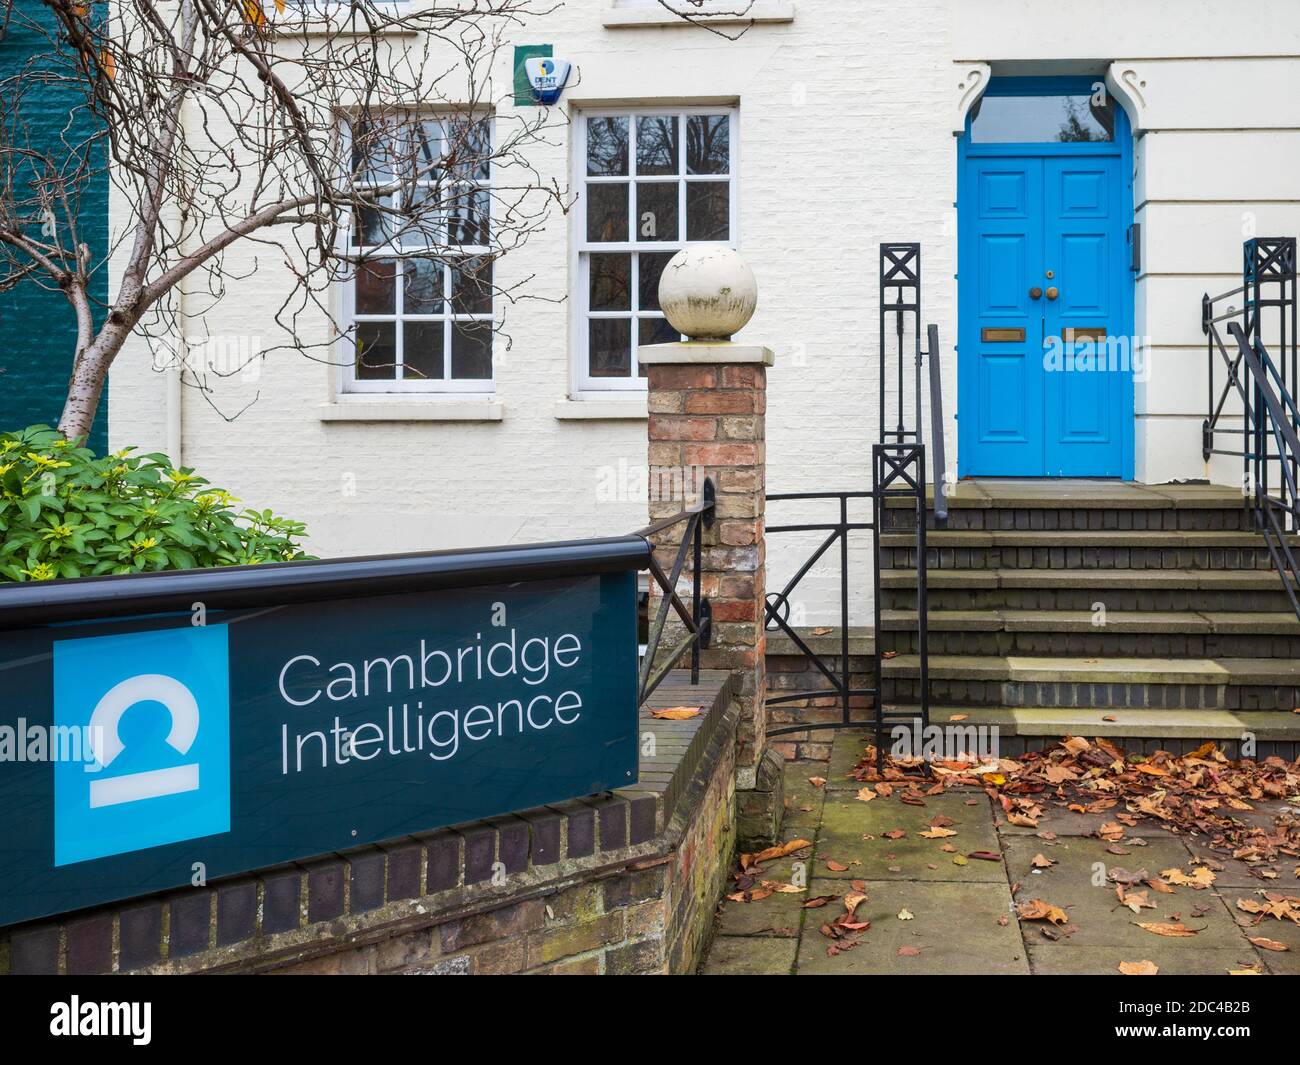 Cambridge - Inteligencia de la visualización de datos de una empresa con sede en Cambridge, Reino Unido, fundada en 2011, ayudando a las empresas a comprender sus datos conectados Foto de stock